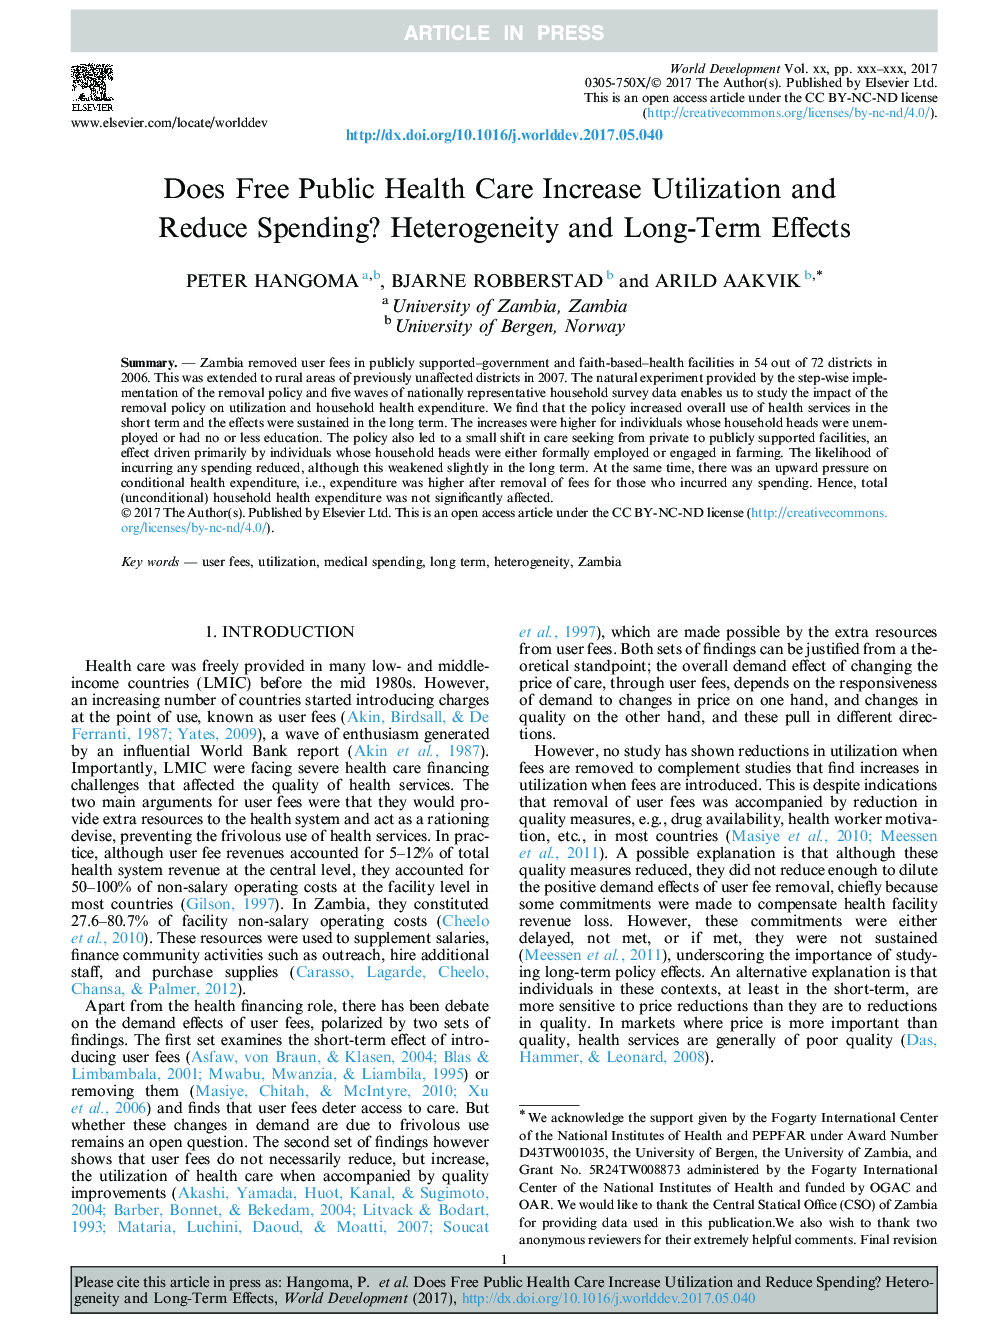 آیا استفاده از خدمات رایگان بهداشت عمومی افزایش می یابد و هزینه ها را کاهش می دهد؟ عدم همبستگی و اثرات بلند مدت 